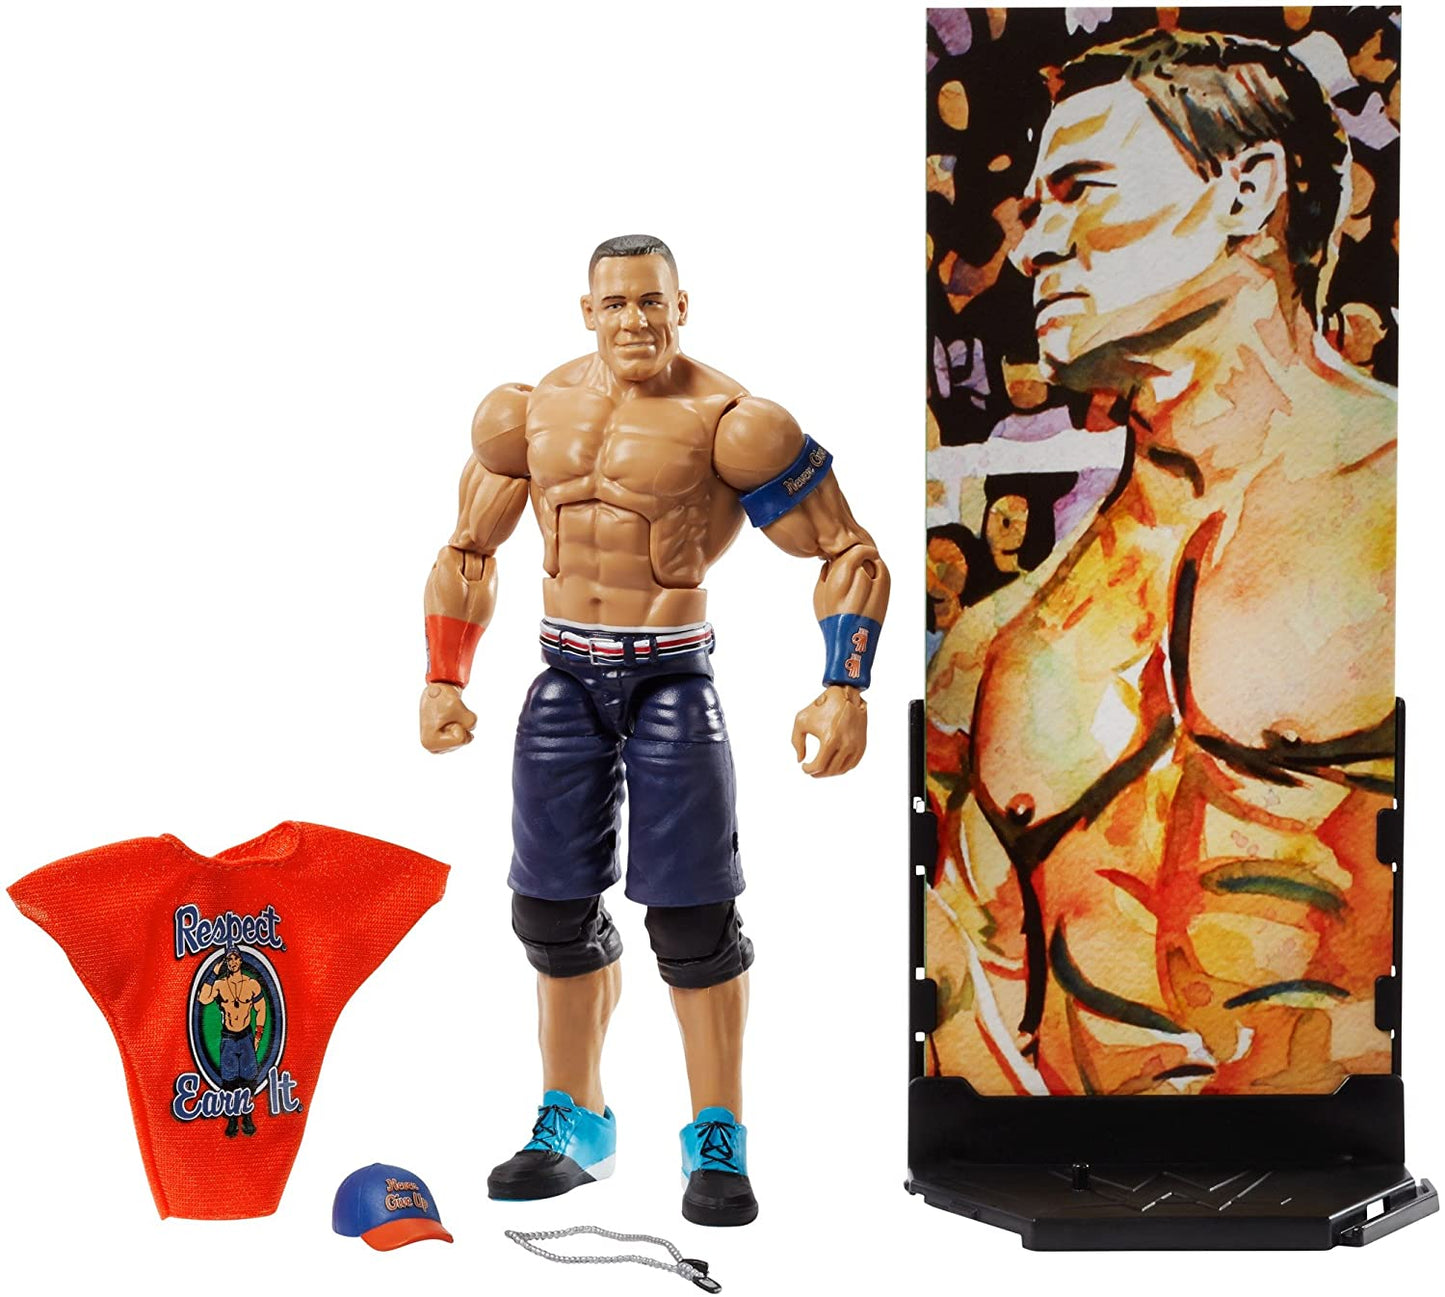 2018 WWE Mattel Elite Collection Series 60 John Cena